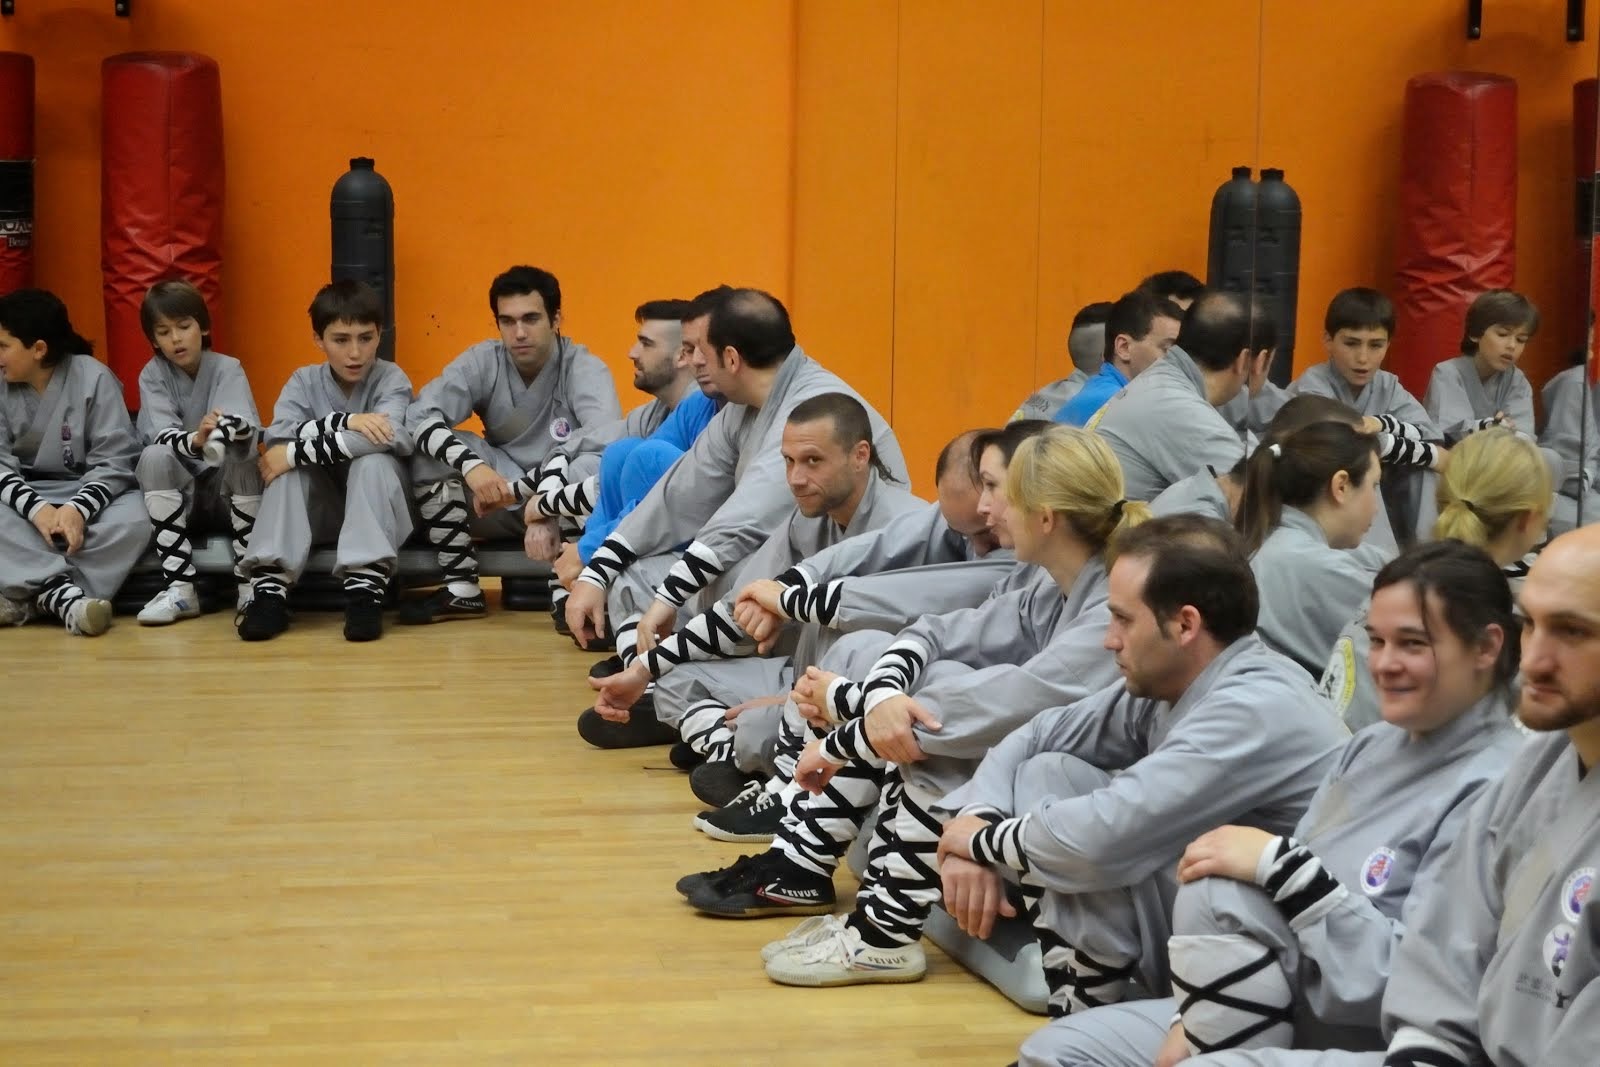 Madrid Kung Fu Shaolin - Escuela de Artes Marciales China.